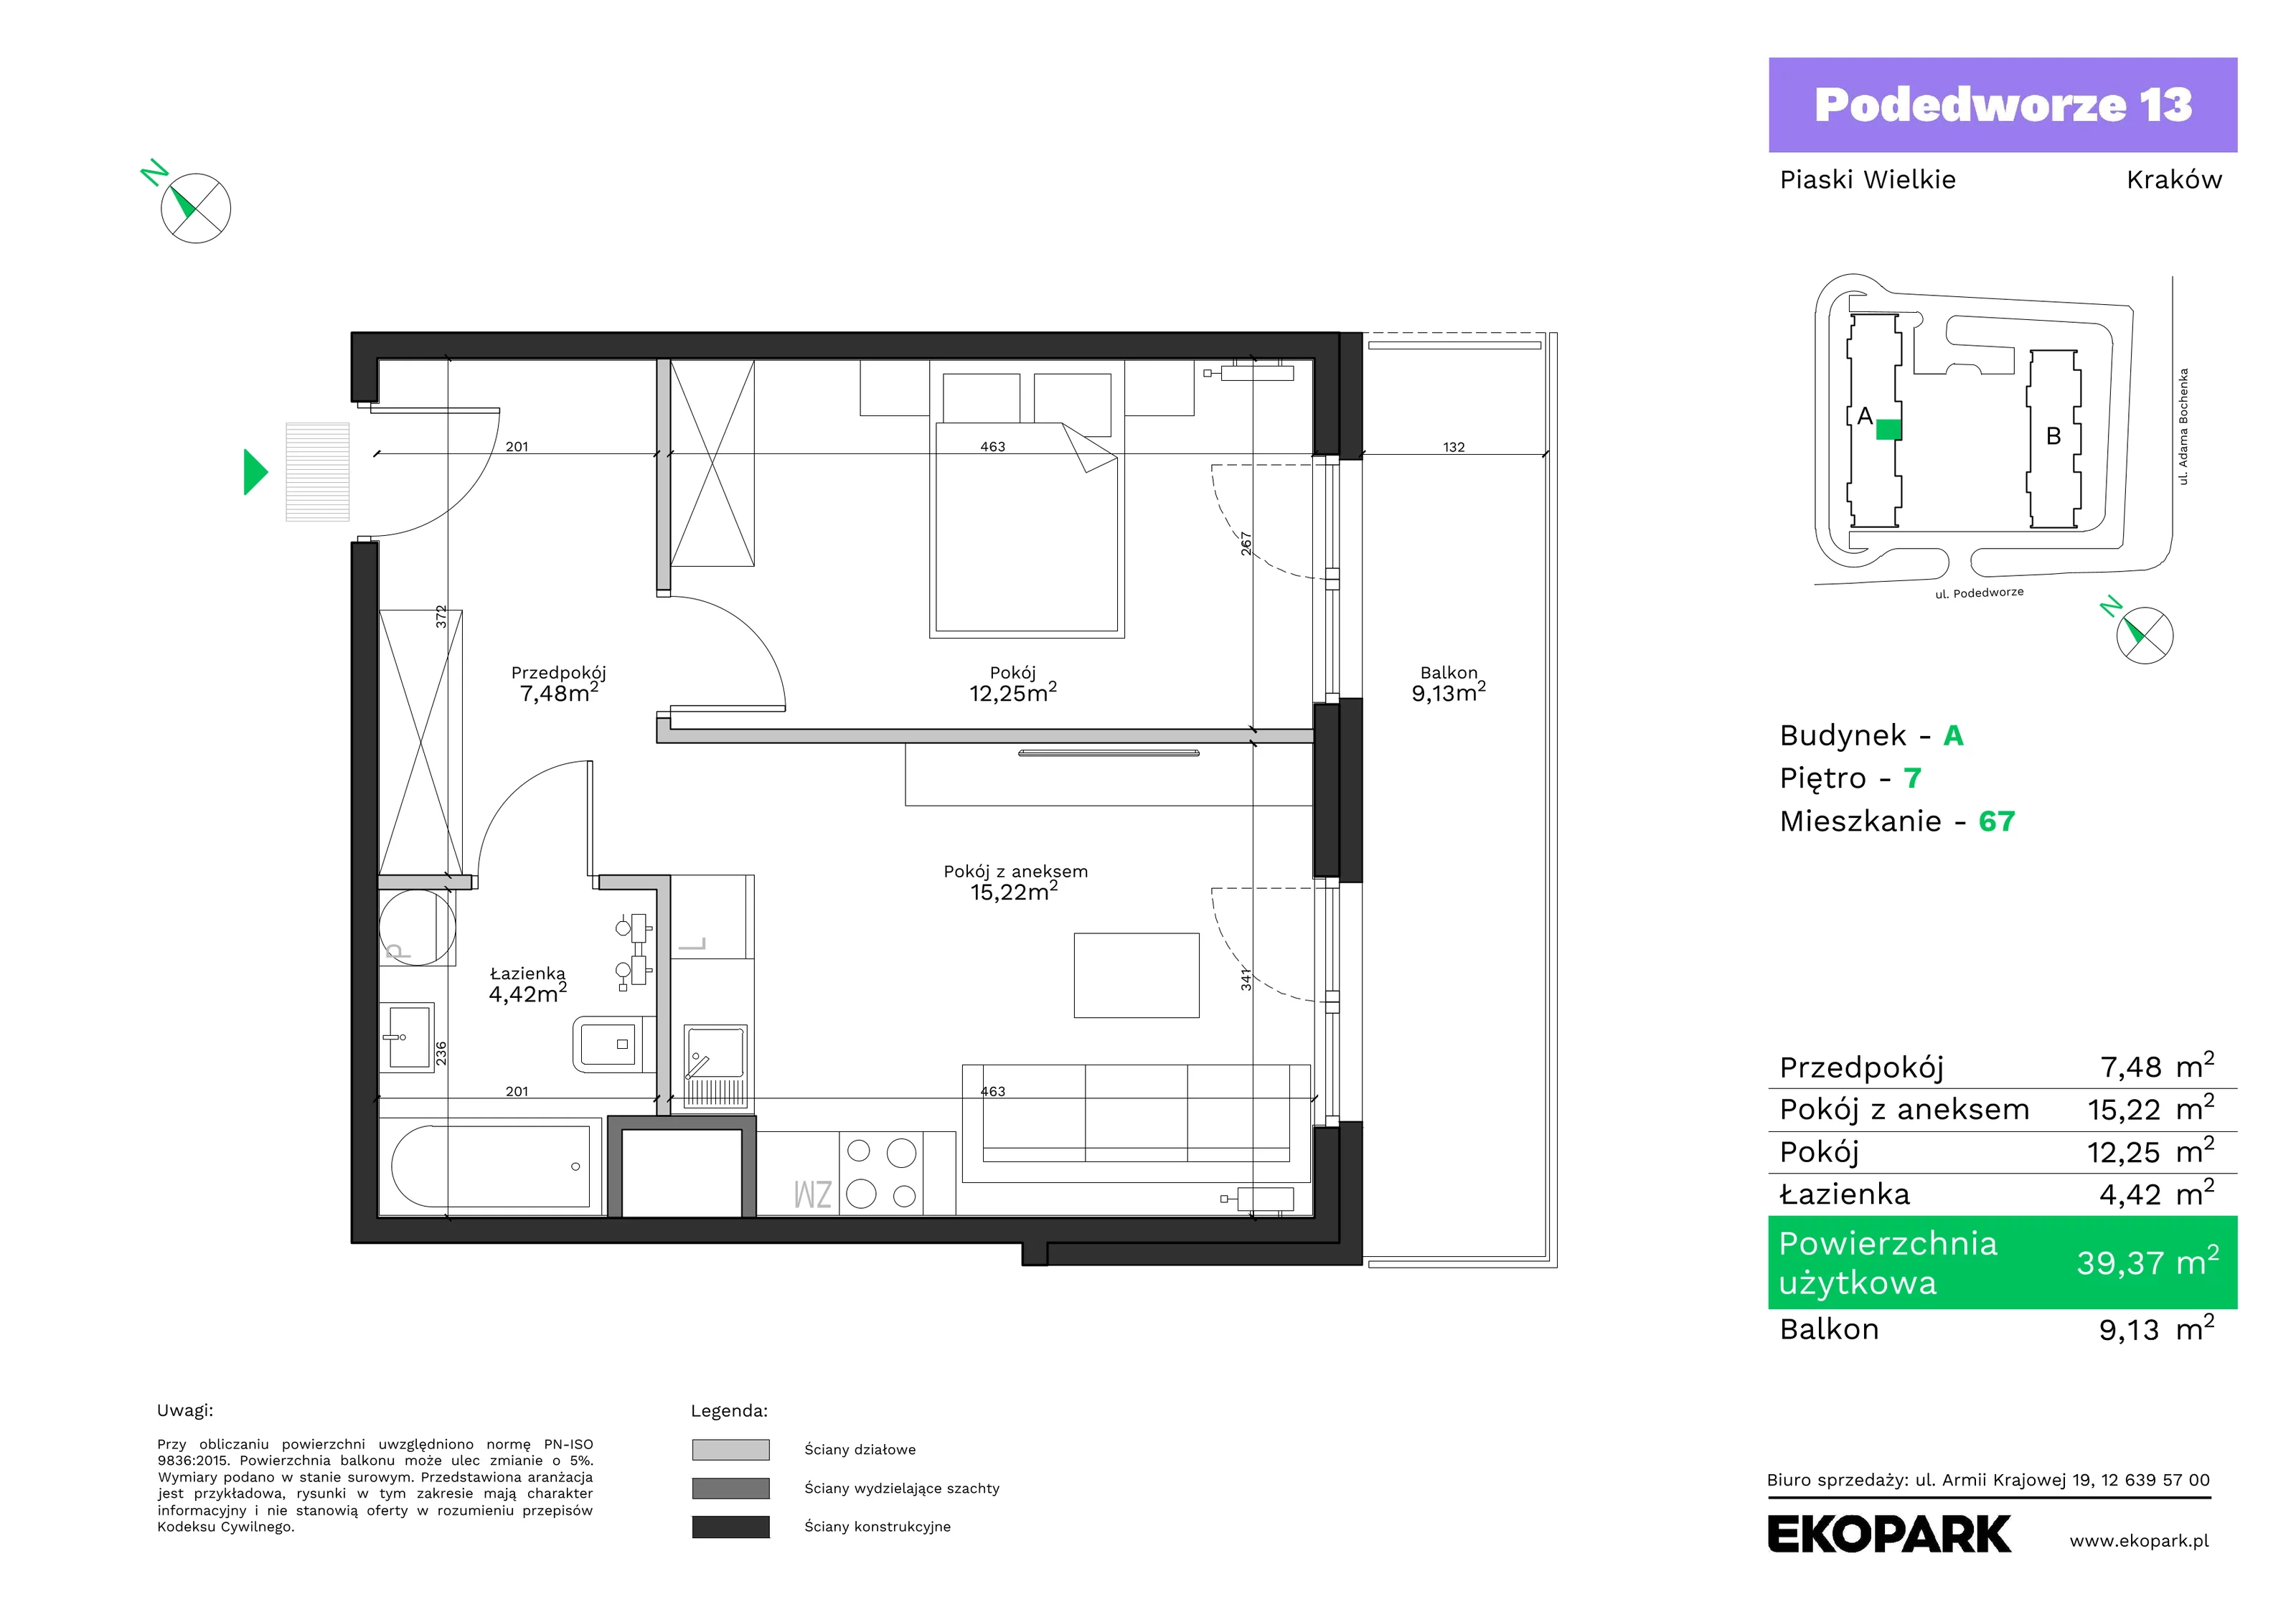 Mieszkanie 39,37 m², piętro 7, oferta nr A67, Podedworze 13, Kraków, Podgórze Duchackie, Piaski Wielkie, ul. Podedworze 13